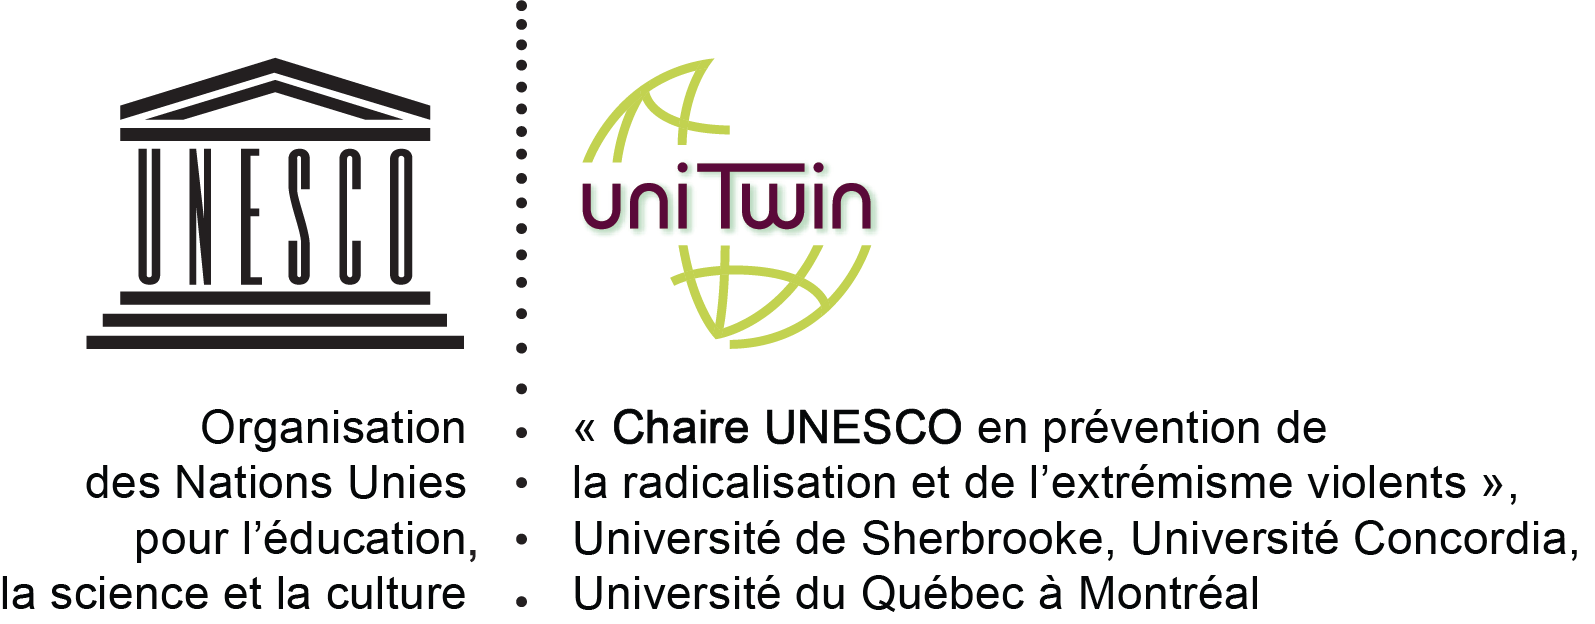 Chaire UNESCO en prévention de la radicalisation et de l'extrémisme violents